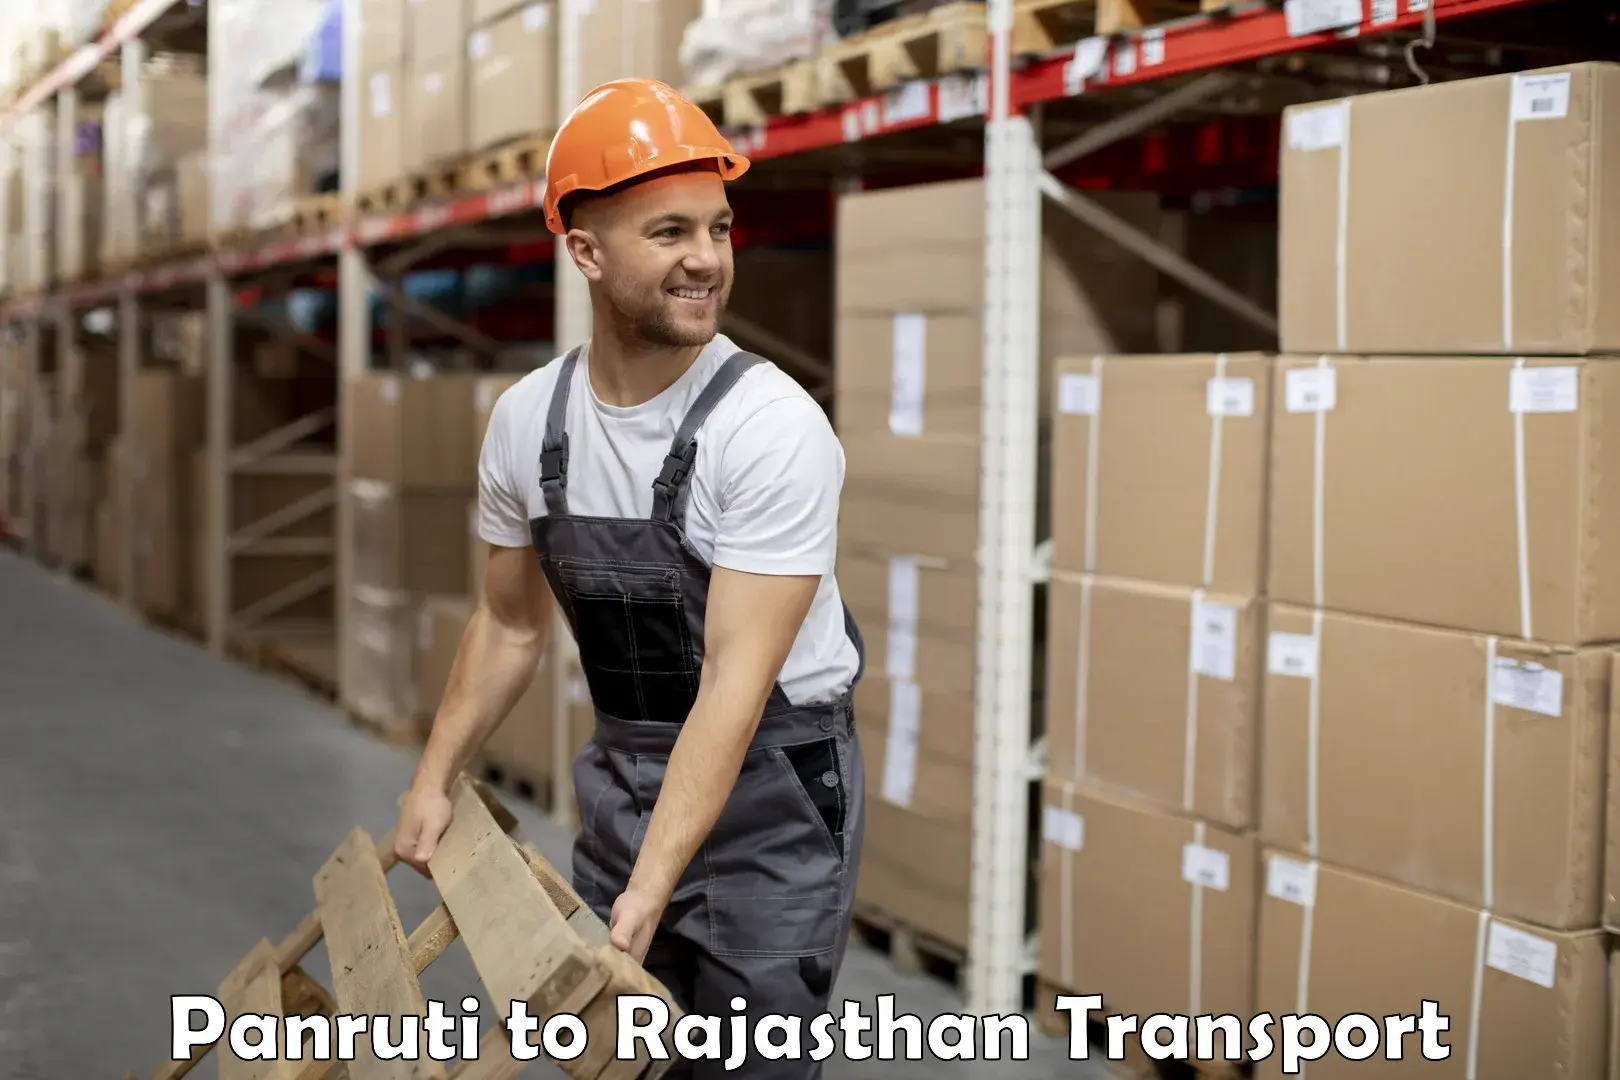 Furniture transport service Panruti to Jaipur